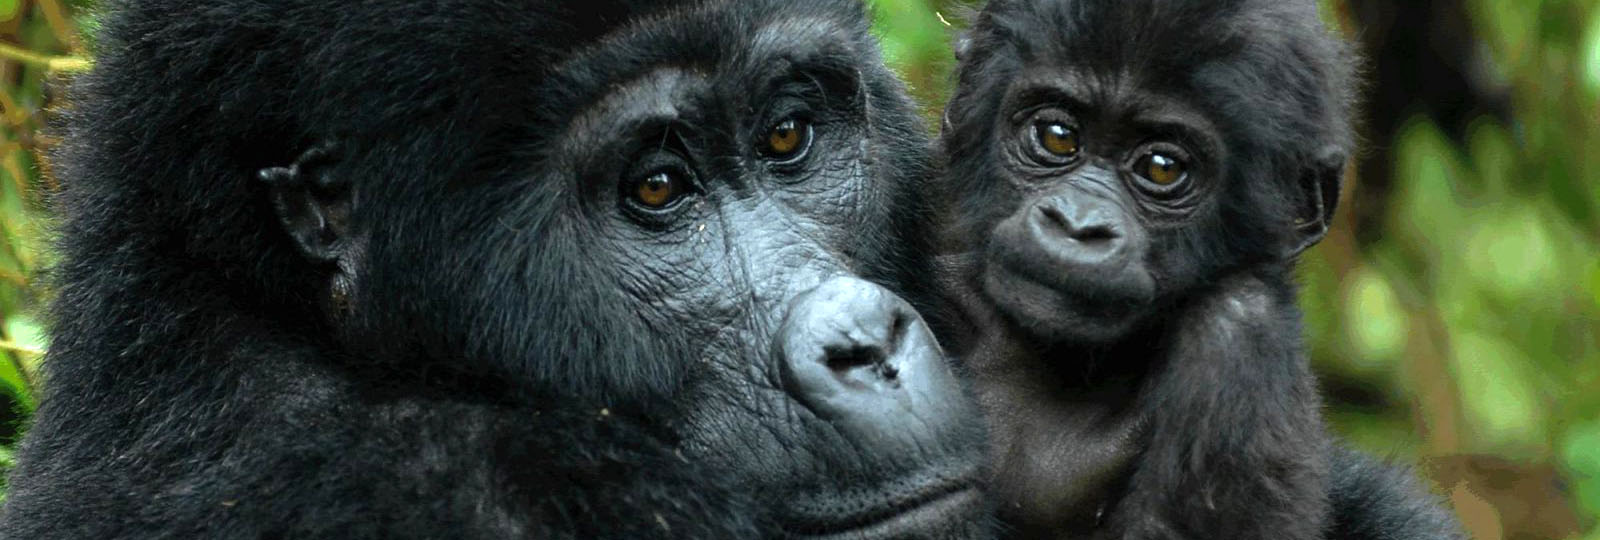 gorilas face side